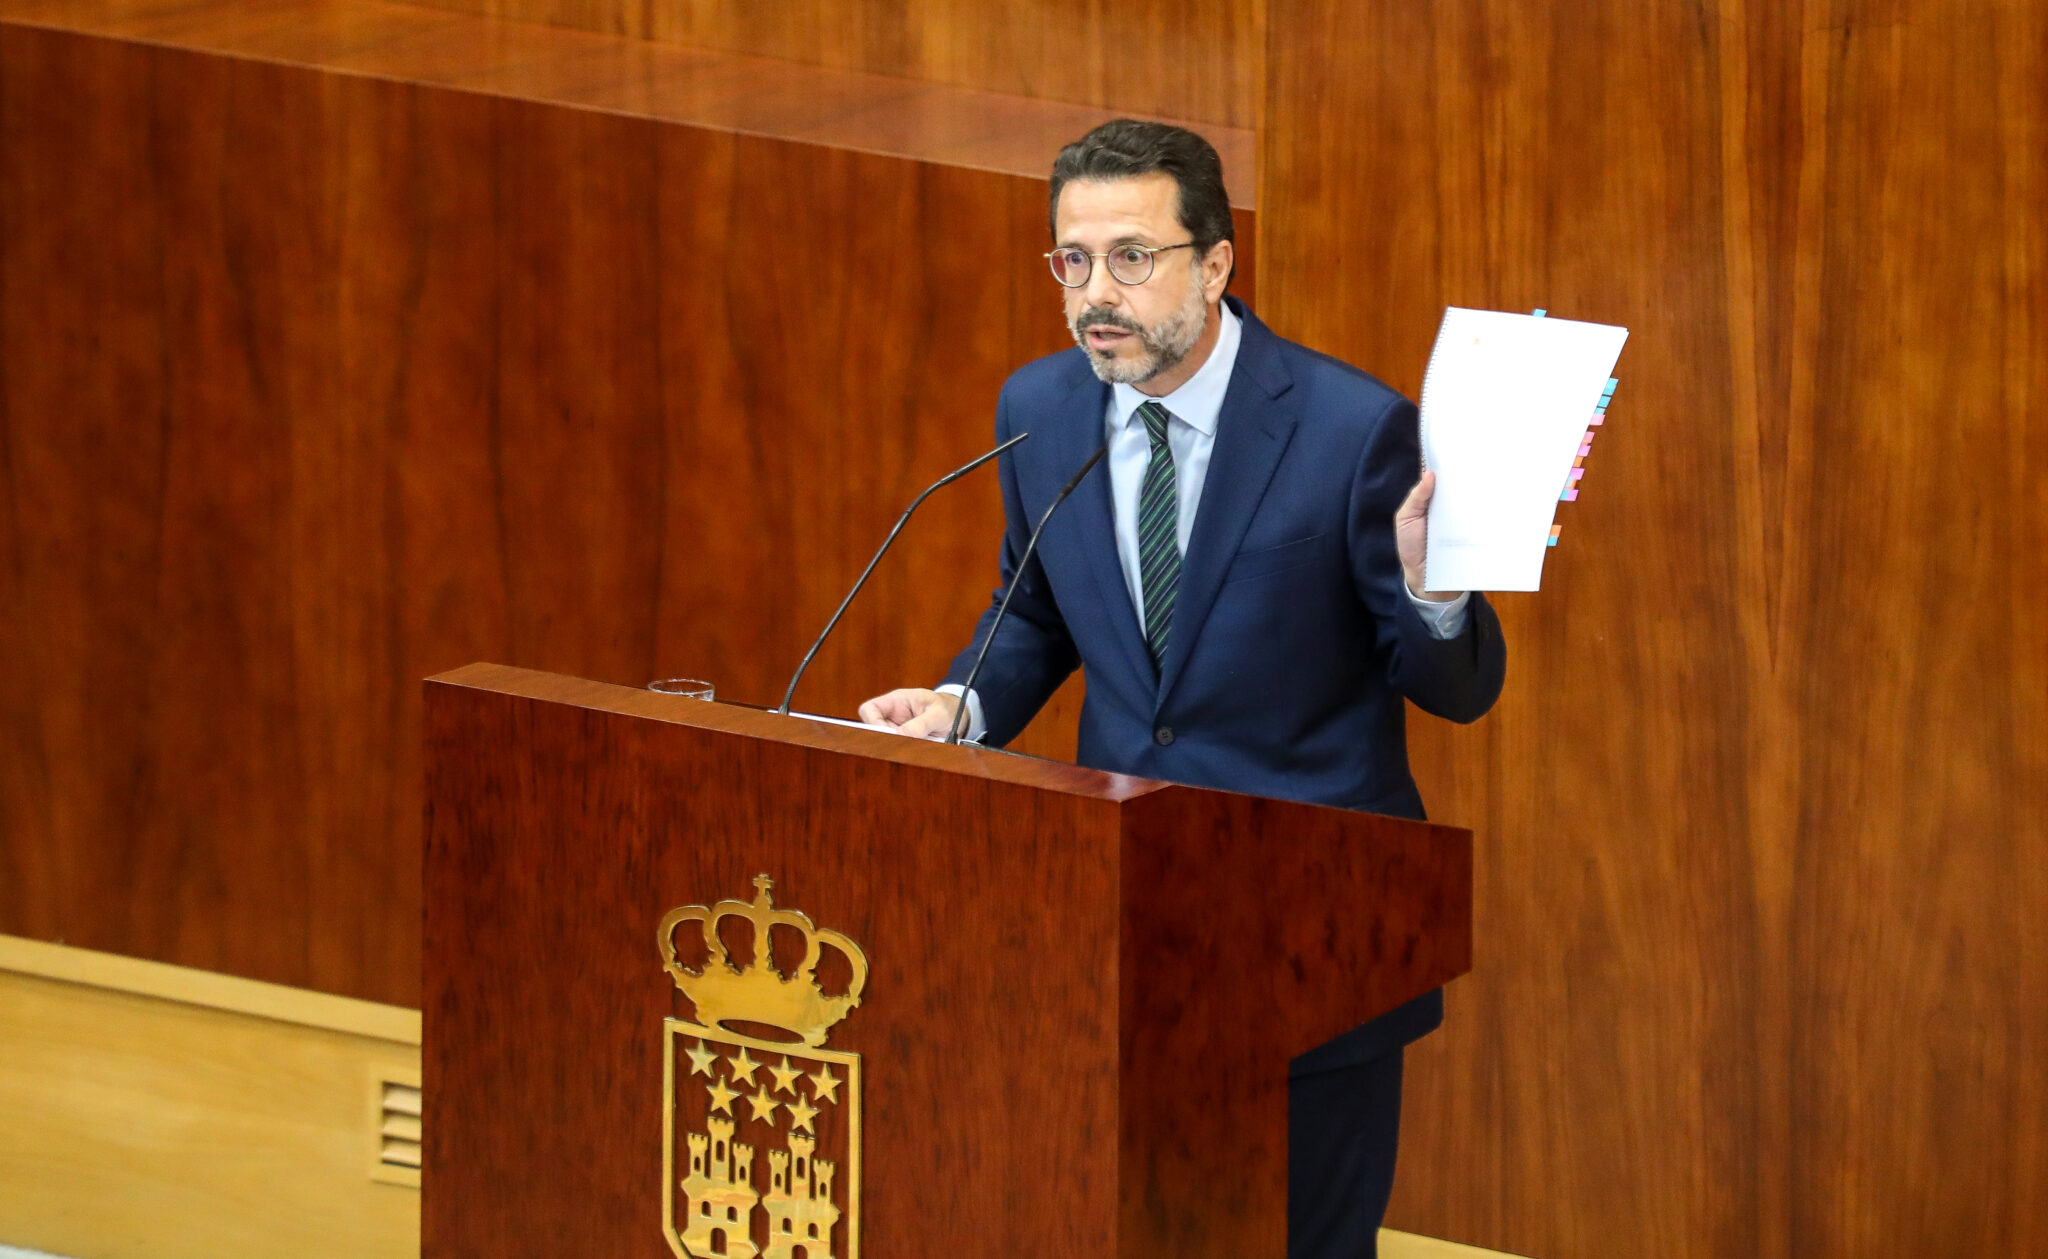 El consejero de Hacienda, Economía y Empleo de la Comunidad de Madrid, Javier Fernández-Lasquetty.